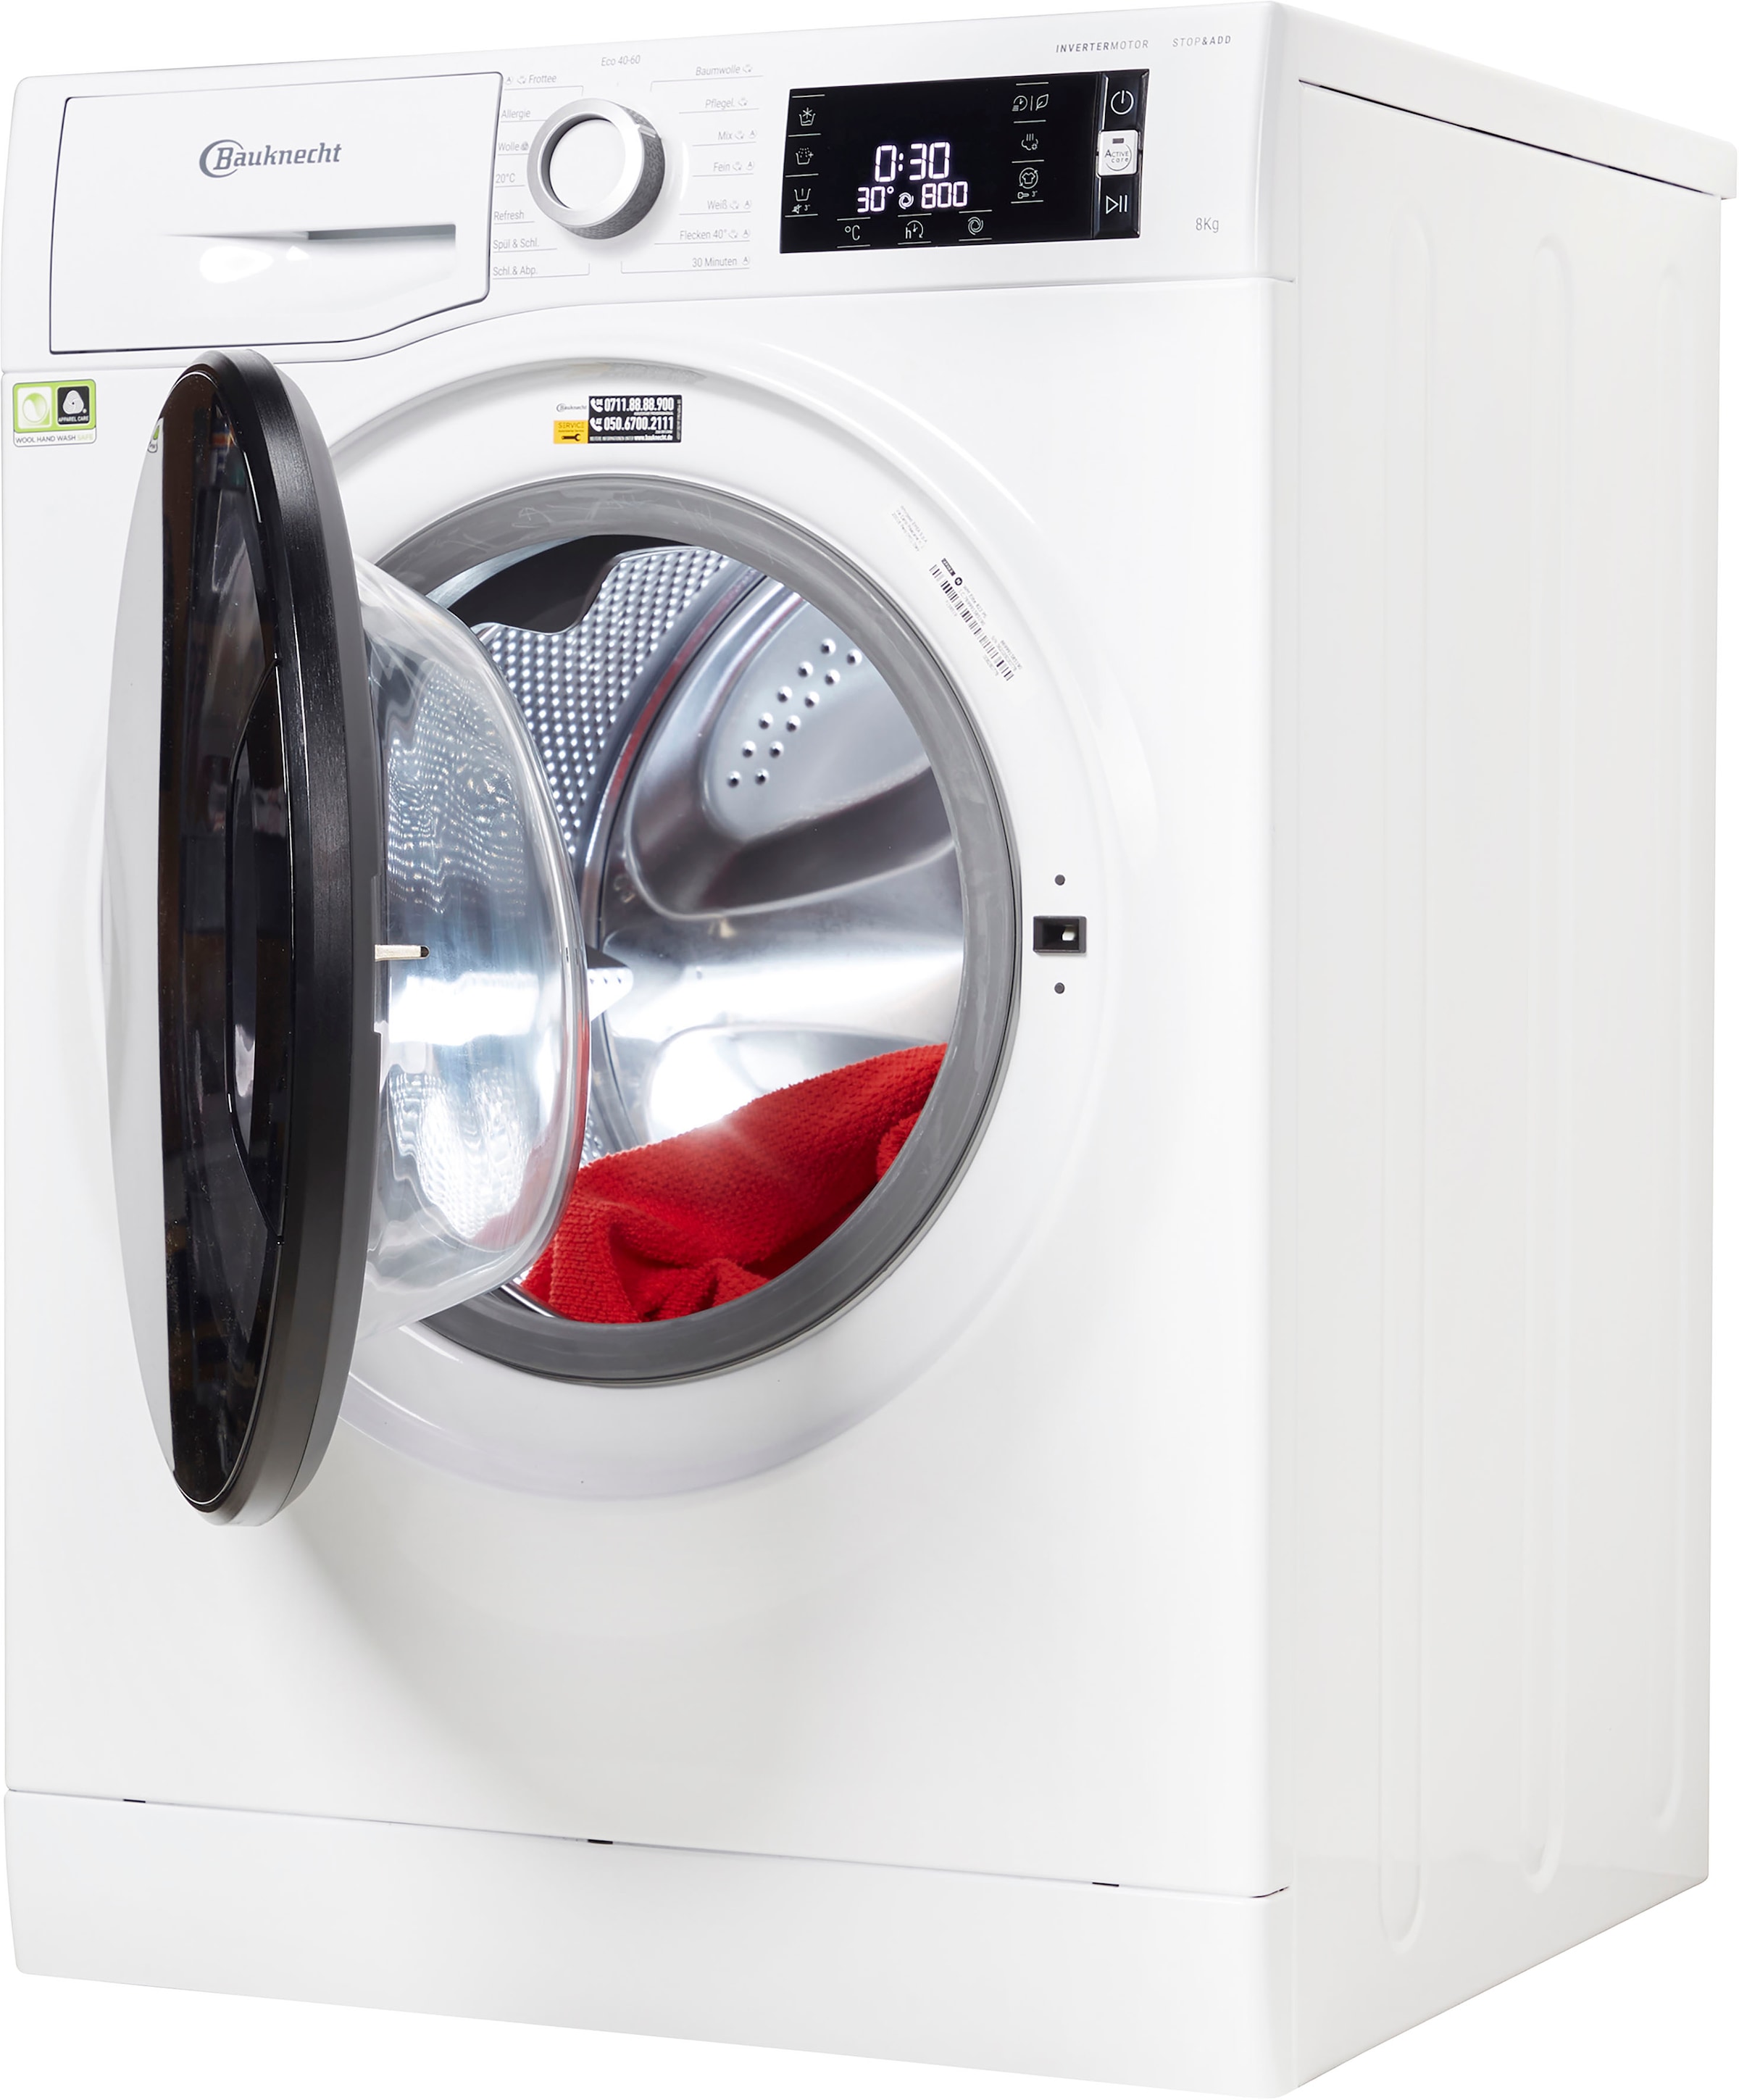 BAUKNECHT Waschmaschine »WM ELITE 823 PS«, WM ELITE 823 PS, 8 kg, 1400 U/min  jetzt bei OTTO